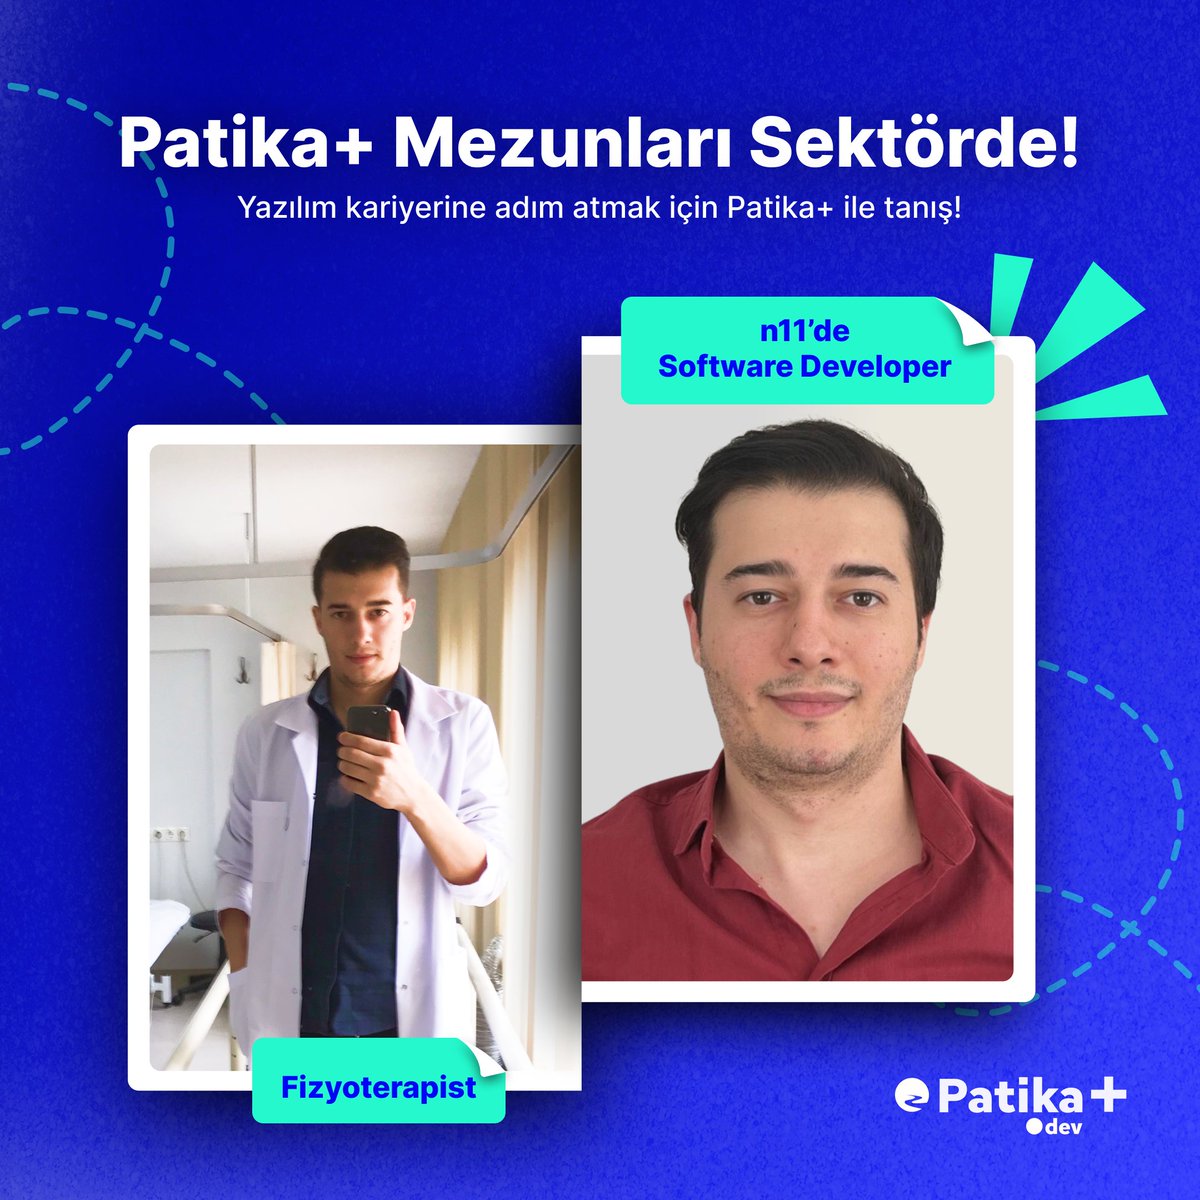 Patika+ mezunu Serhat Acar, fizyoterapistlikten sonra yazılım dünyasına geçiş yaptı! Serhat artık n11'de bir yazılım mühendisi olarak kariyerine yepyeni bir sayfa açıyor. Tebrikler Serhat! 👏 🌐 Serhat gibi yeni bir kariyer yolculuğuna başlamak isteyenler için sunduğumuz Patika+